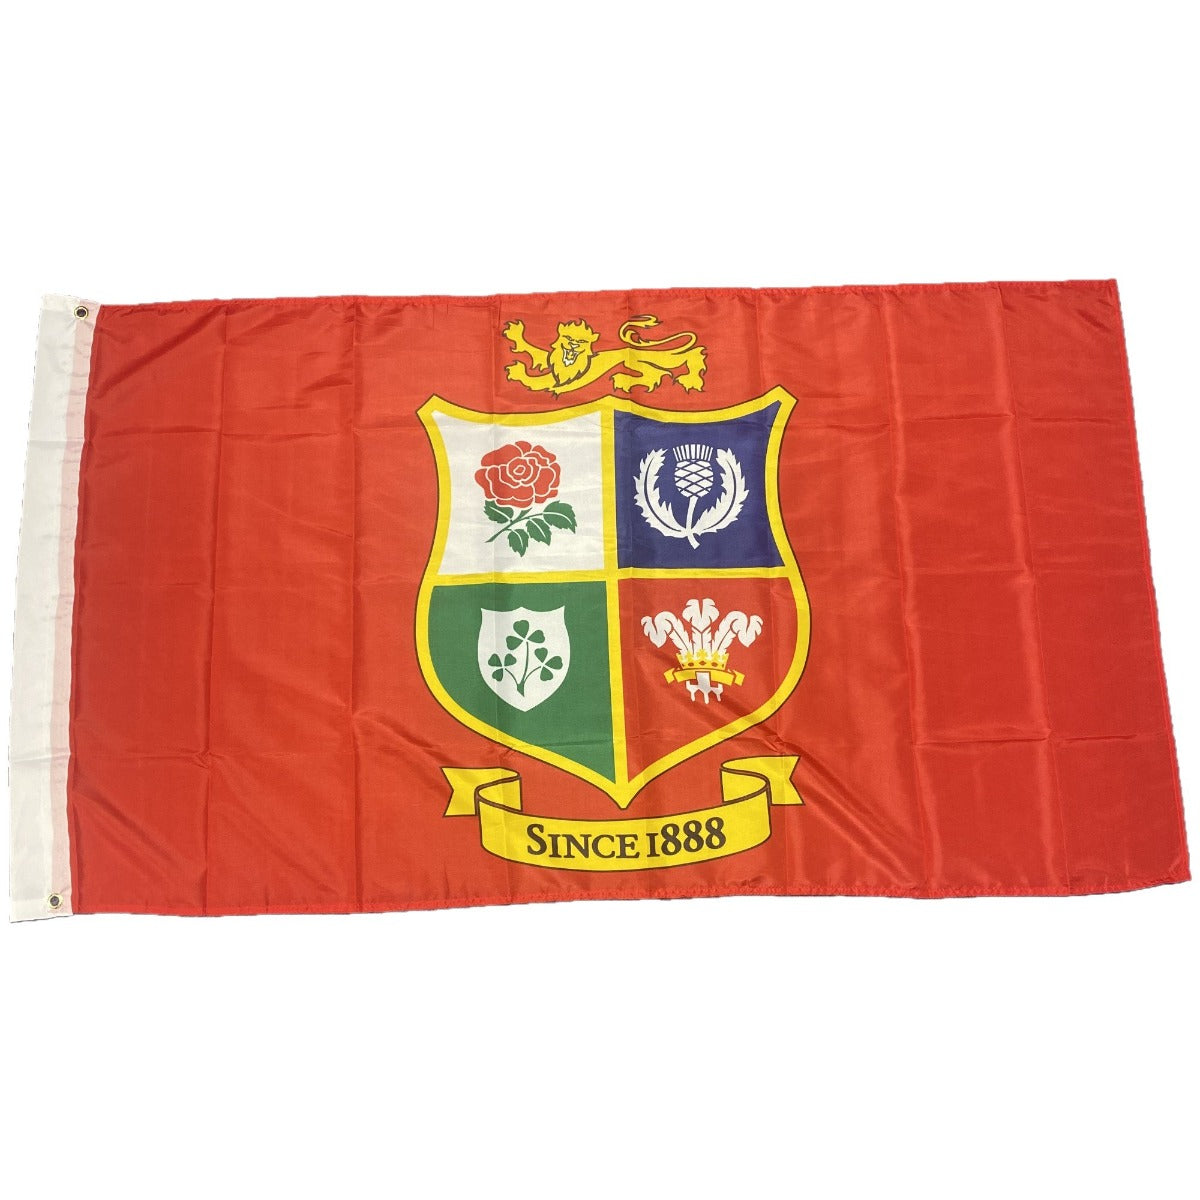 British and Irish Lions 5' X 3' Flag